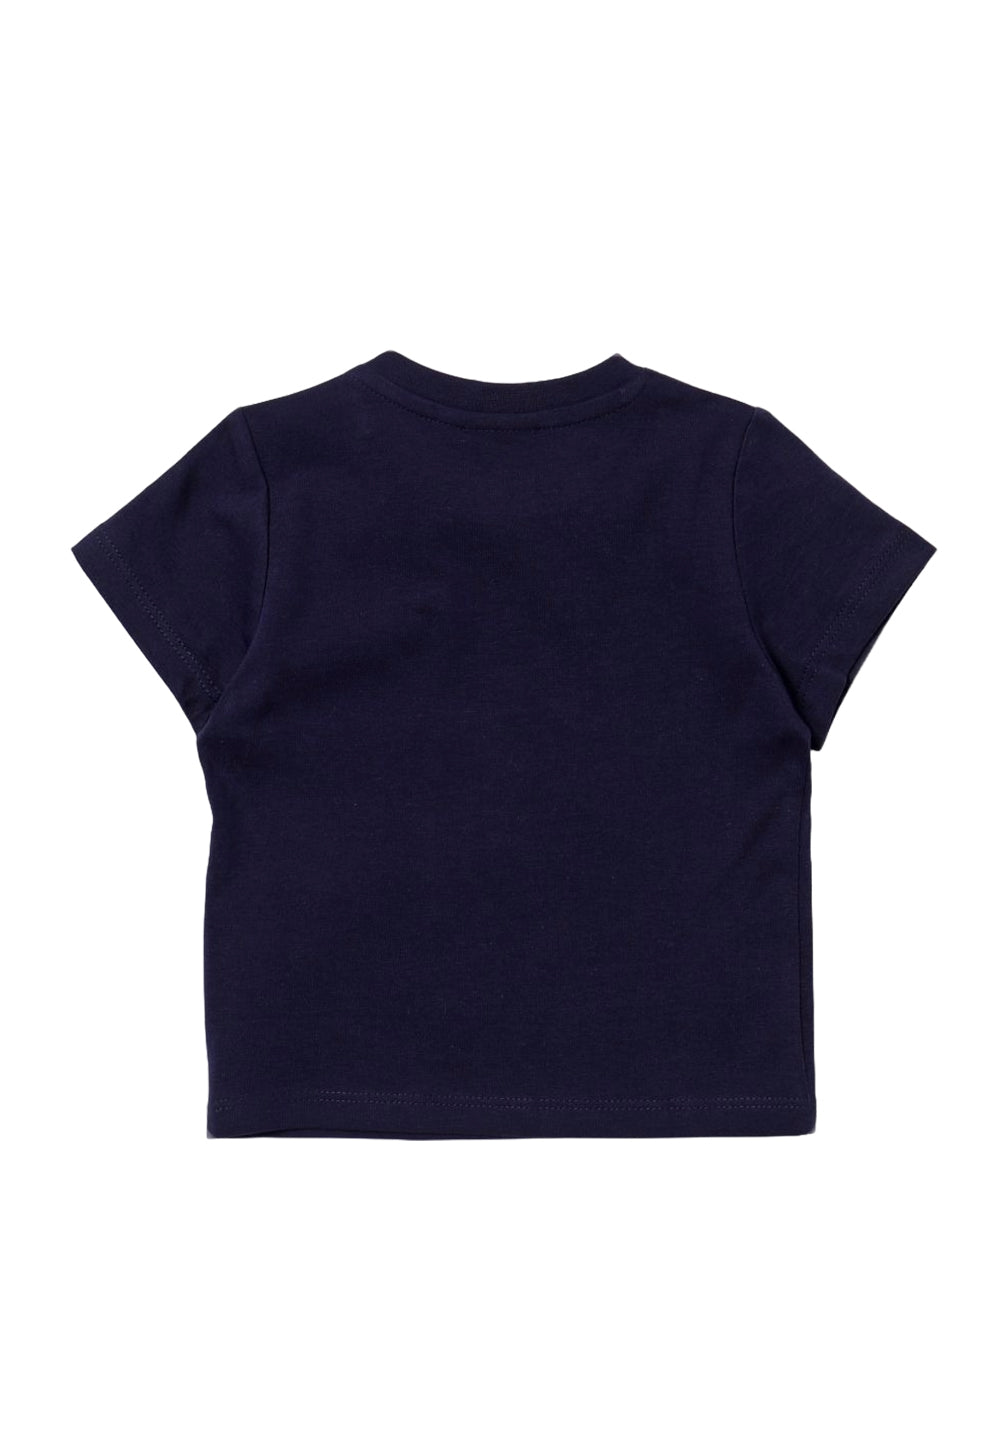 T-shirt blu per bambino - Primamoda kids